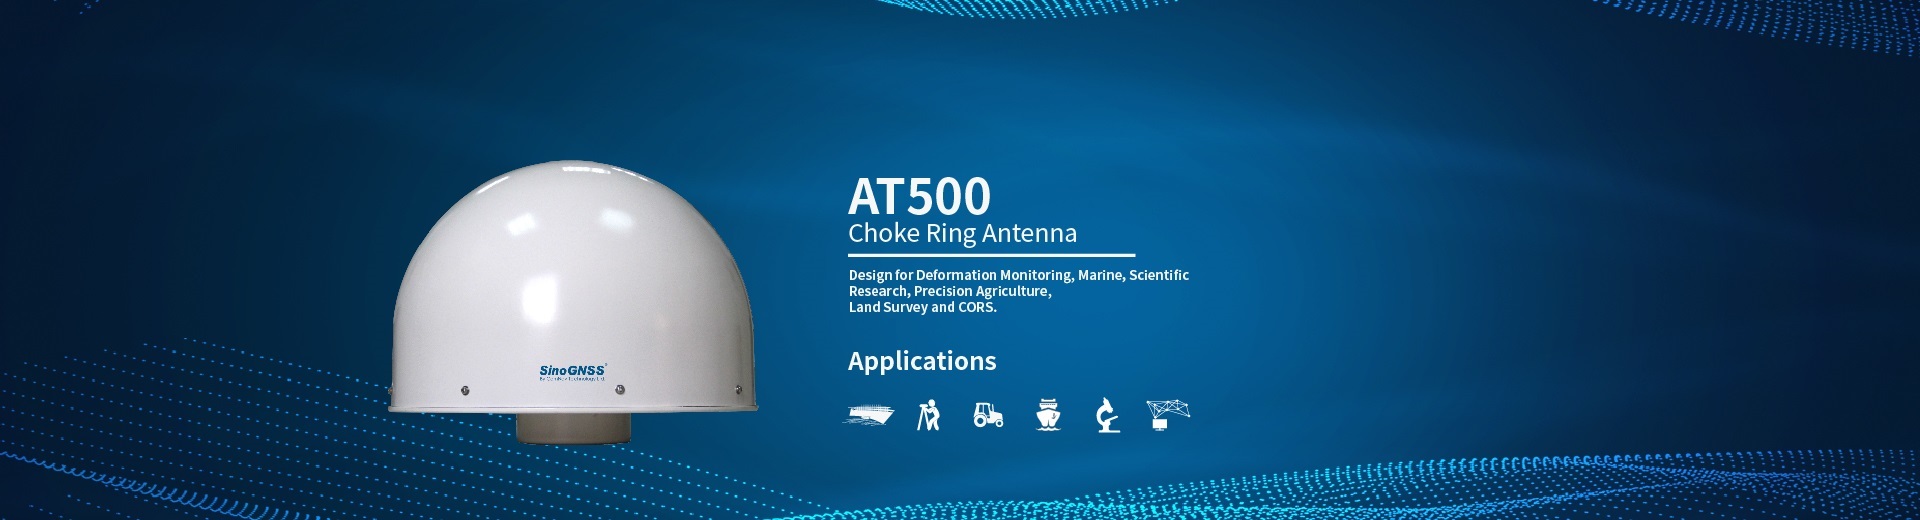 AT500 Choke Ring Antenna